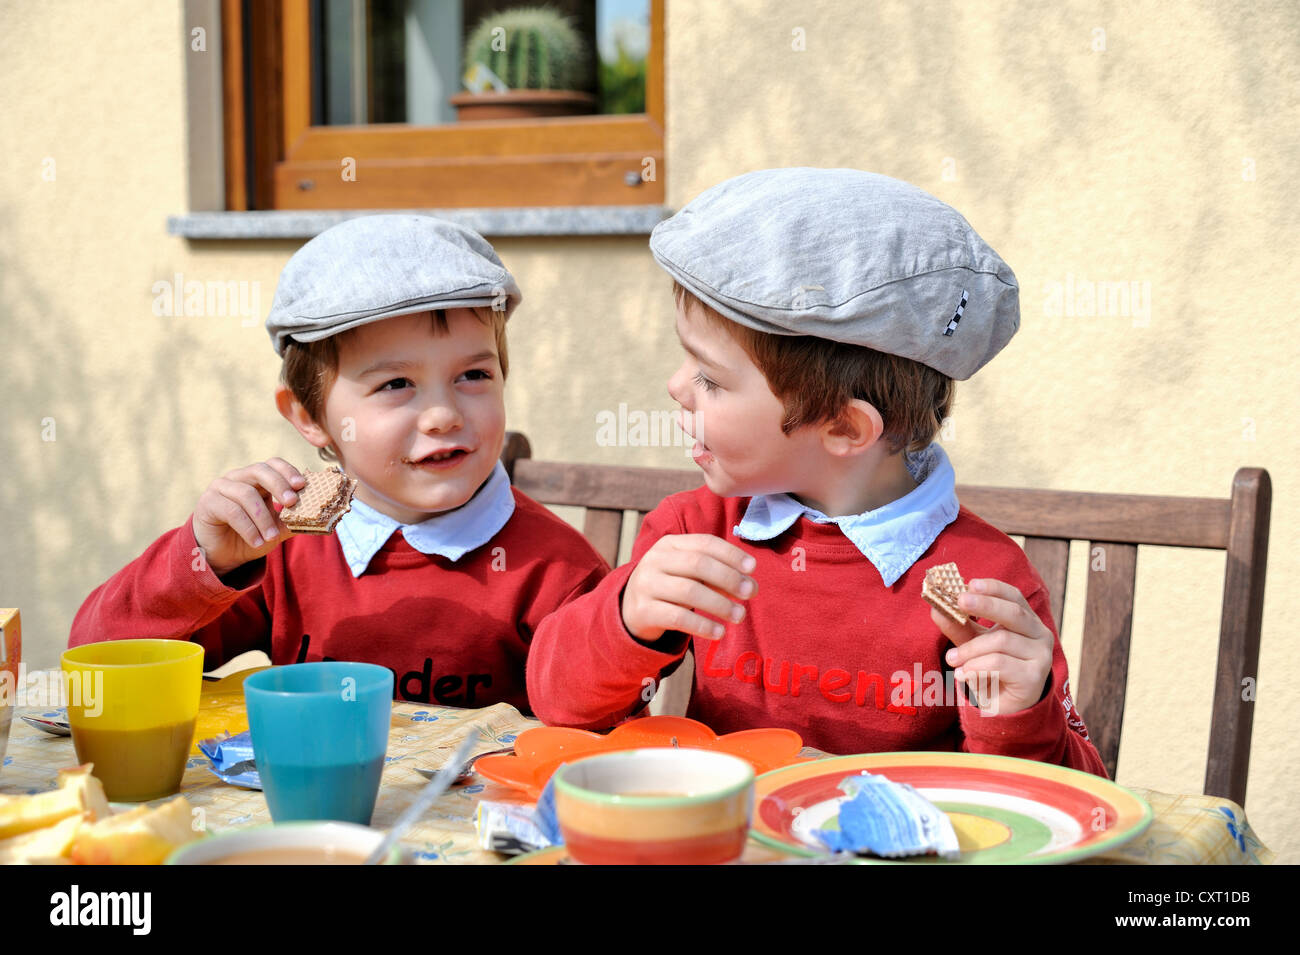 Gemelos, 4, vistiendo gorras planas, sentarse y comer en una mesa Foto de stock